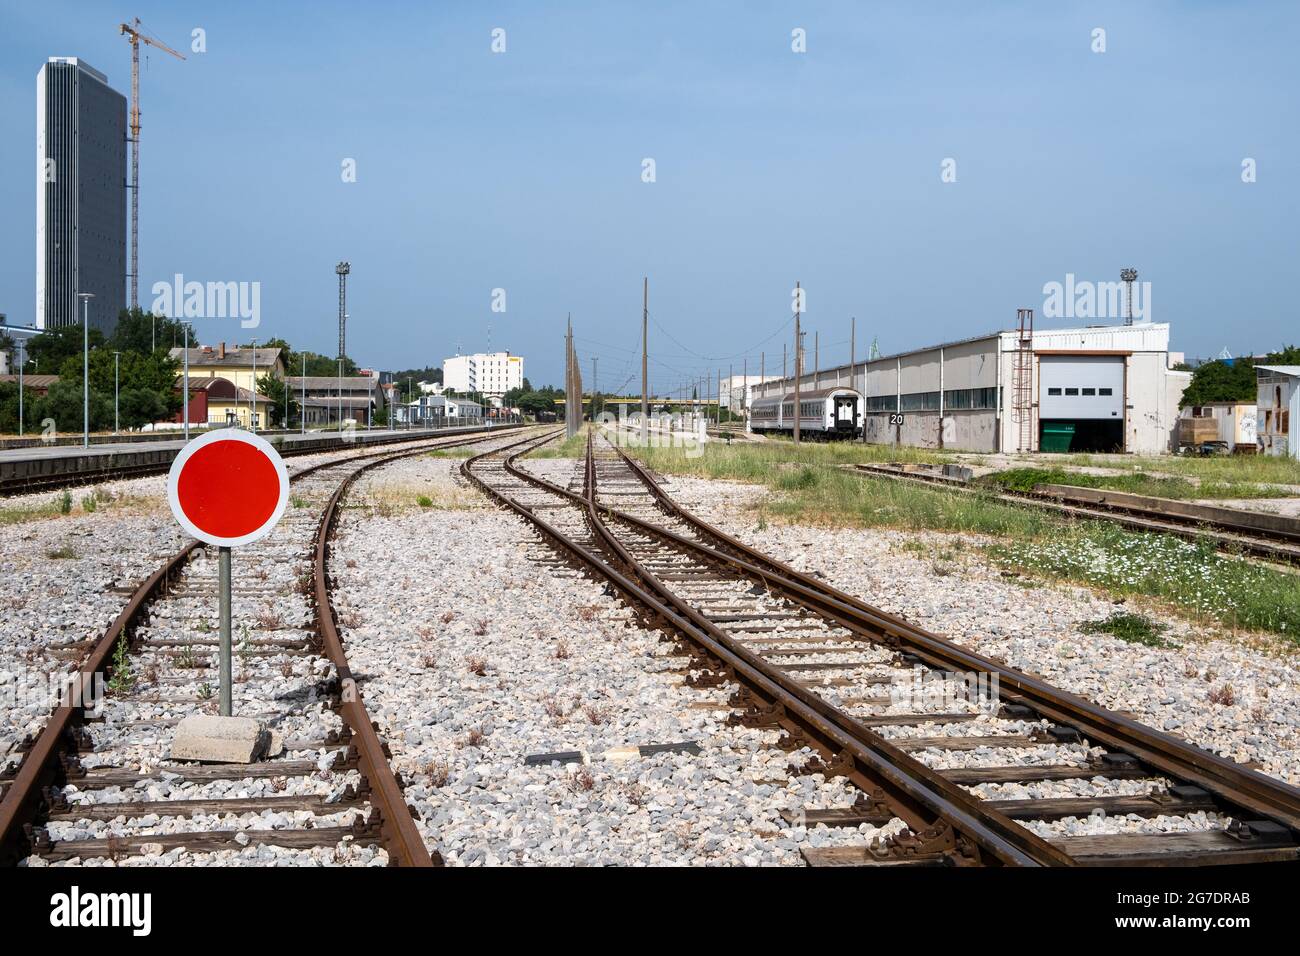 File:Estación Fiorito, ferrocarril Midland (desactivado)..jpg